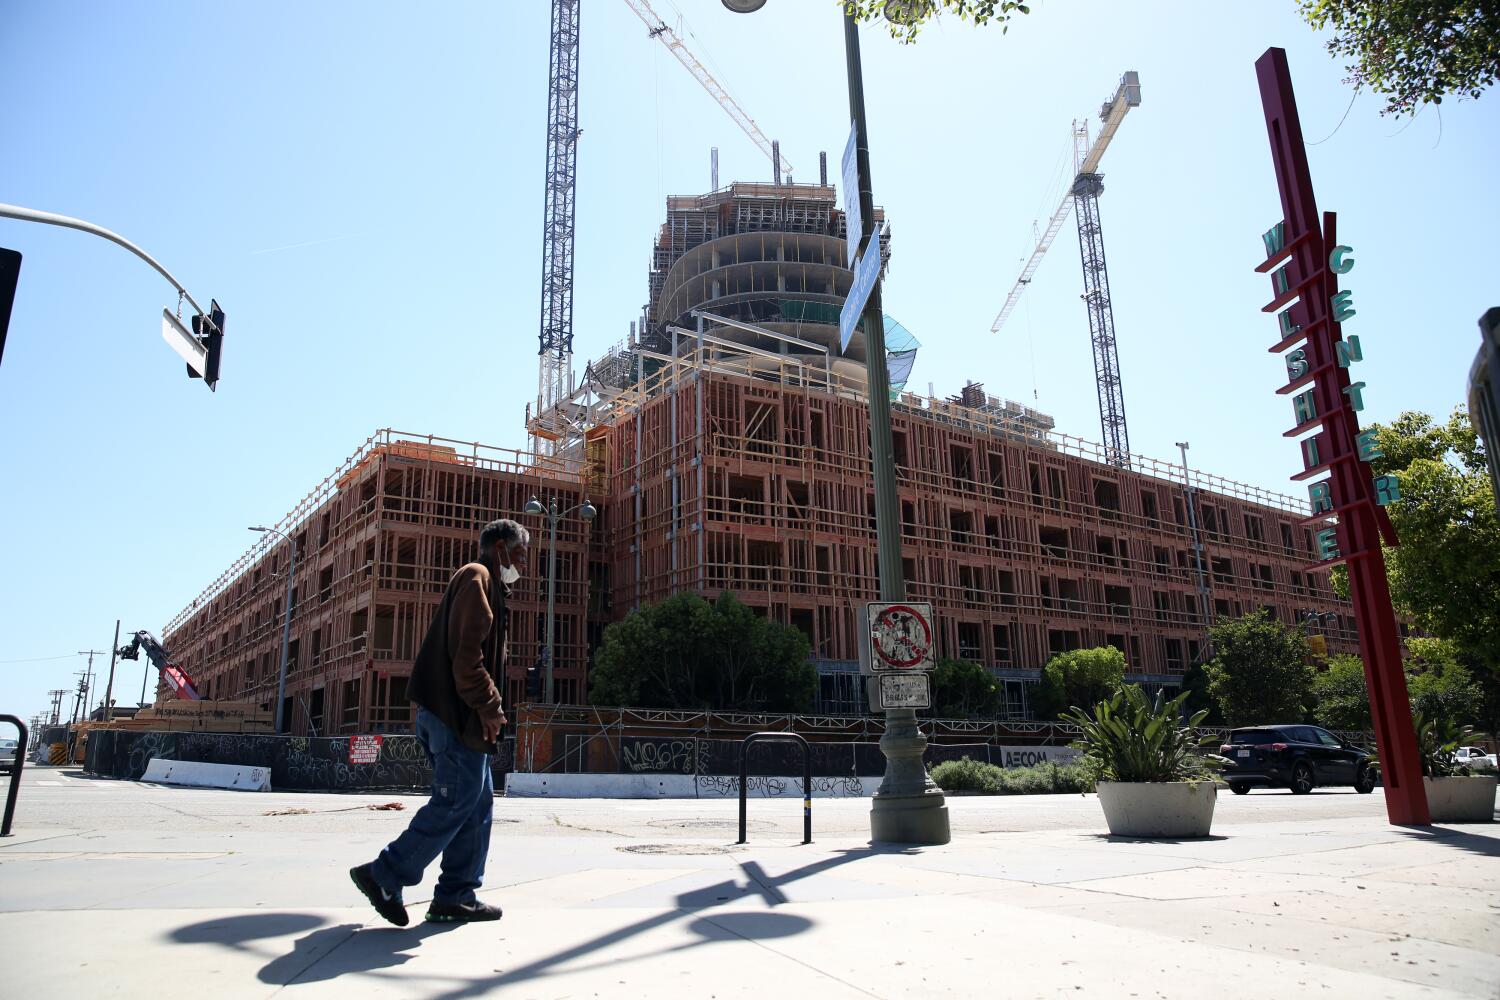 California está construyendo menos viviendas. El Estado podría volverse aún más caro